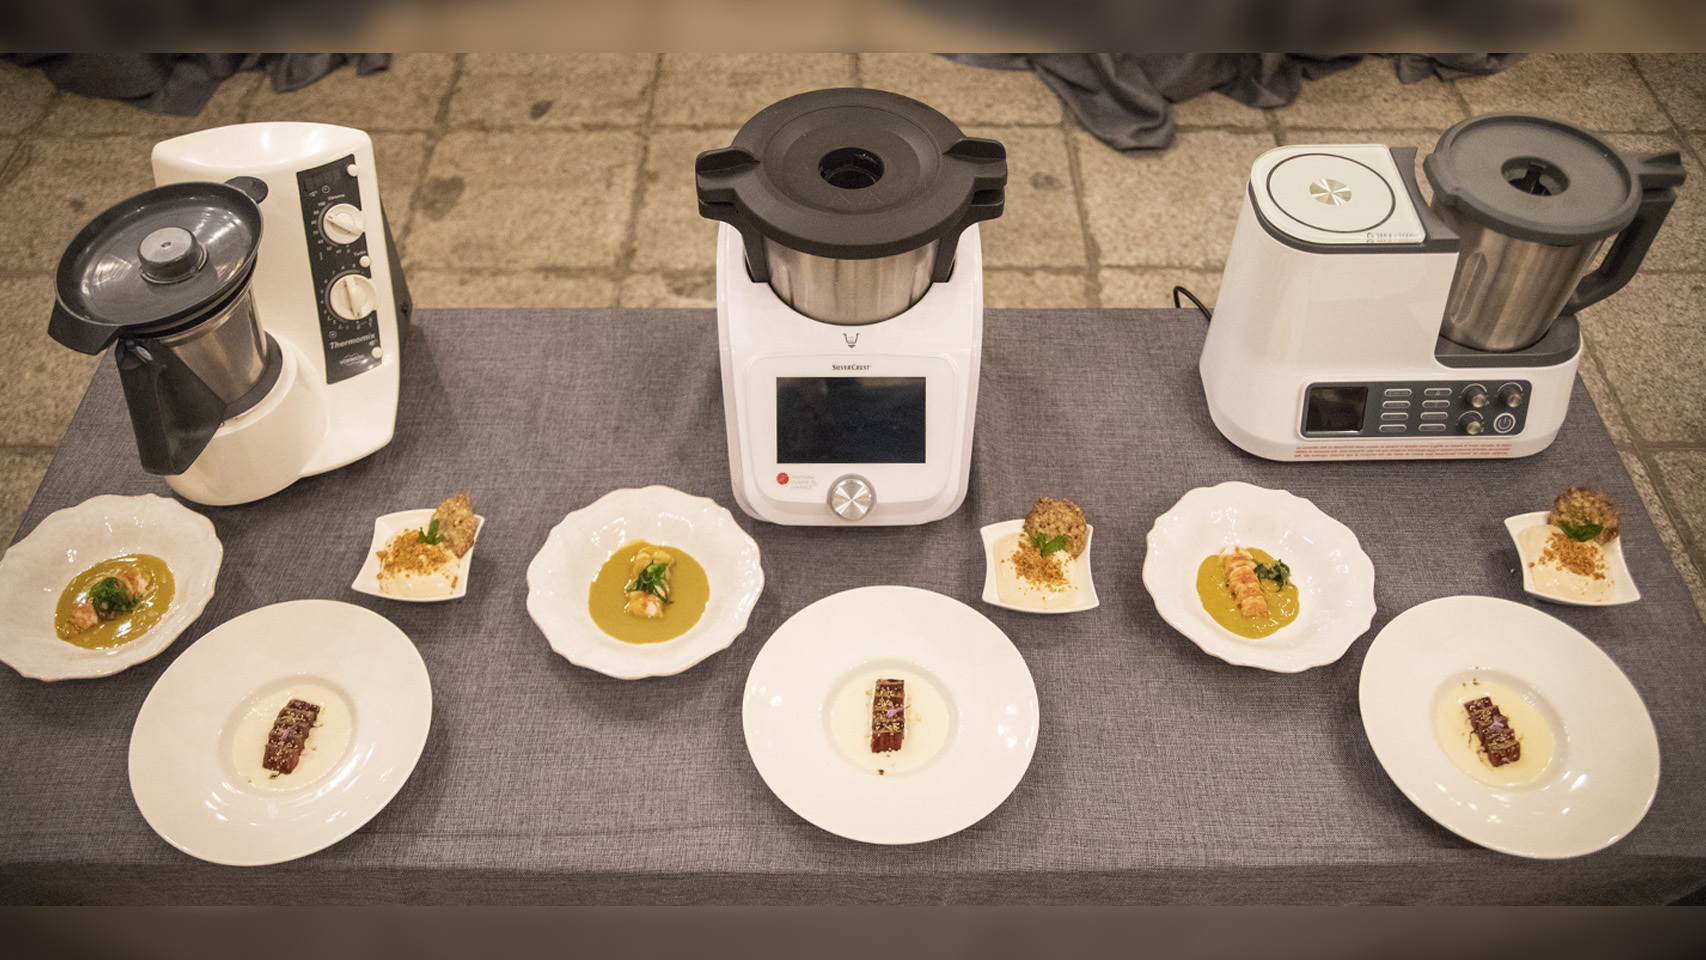 Robots de cocina con los tres menús de izquierda a derecha: Thermomix, Lidl y Aldi.